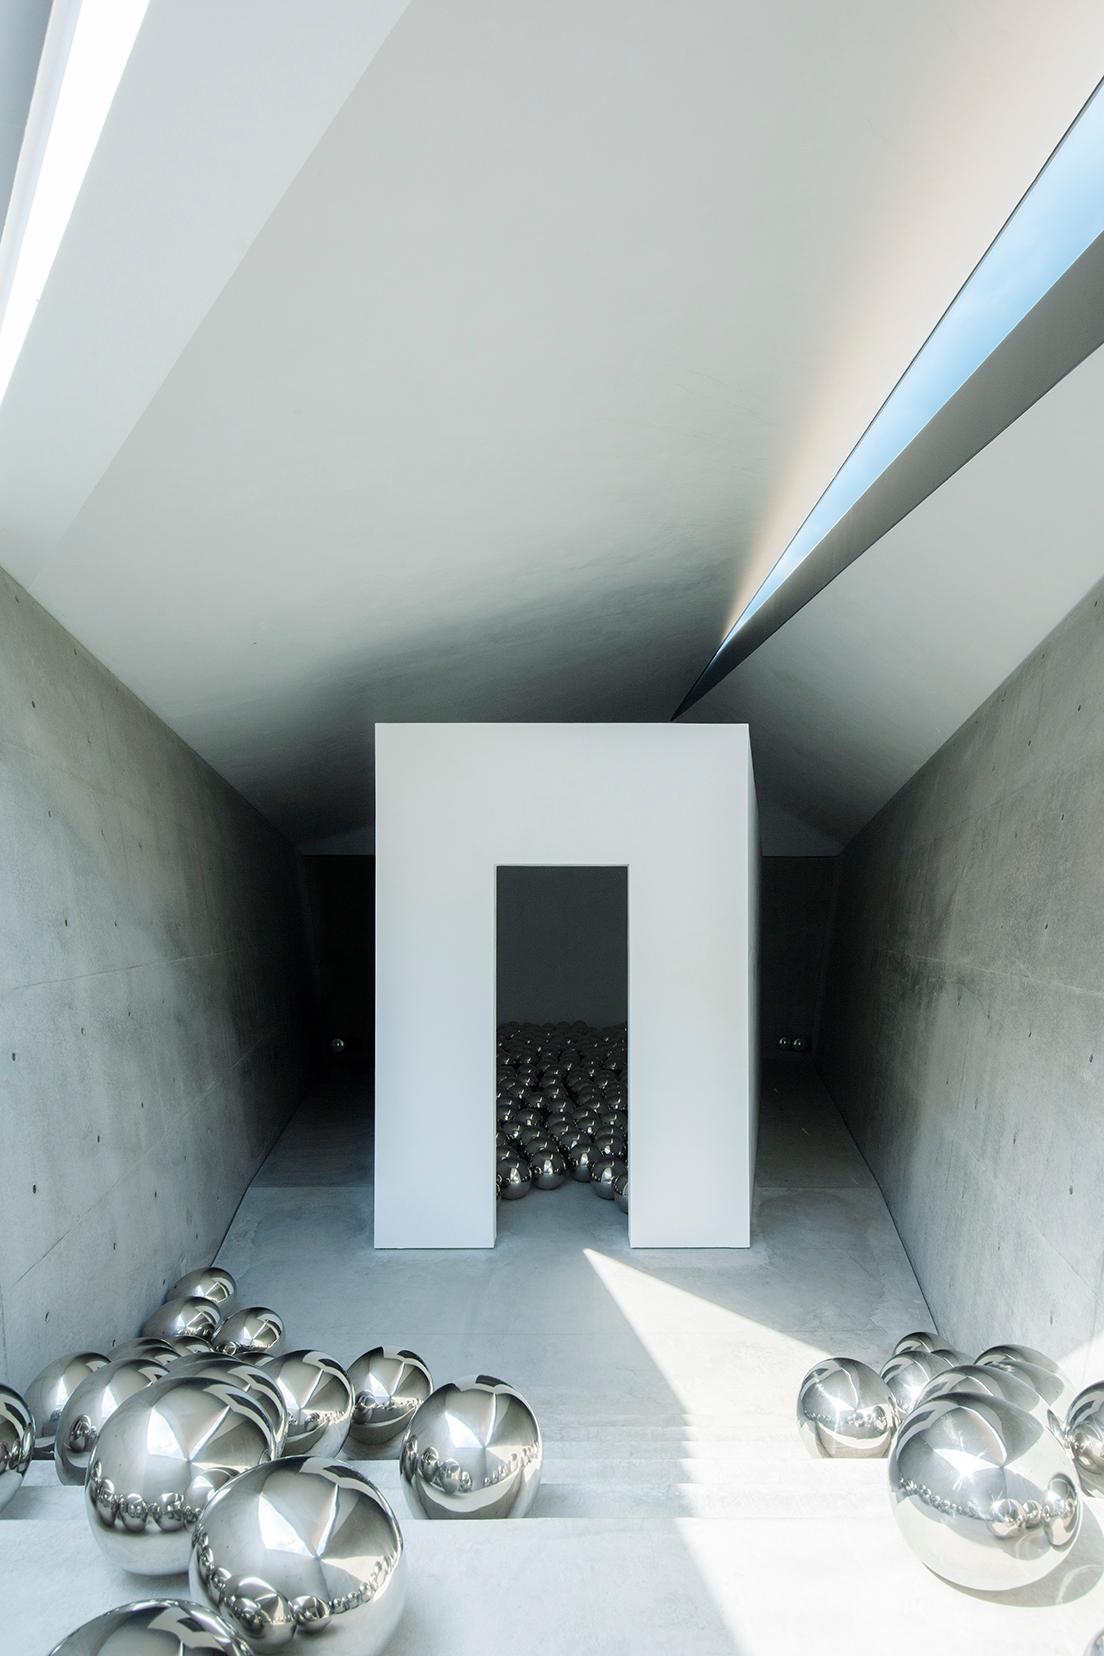 コンクリート壁による二重構造でできた館内は、入れ子のように内部にまた別の空間が作られている。